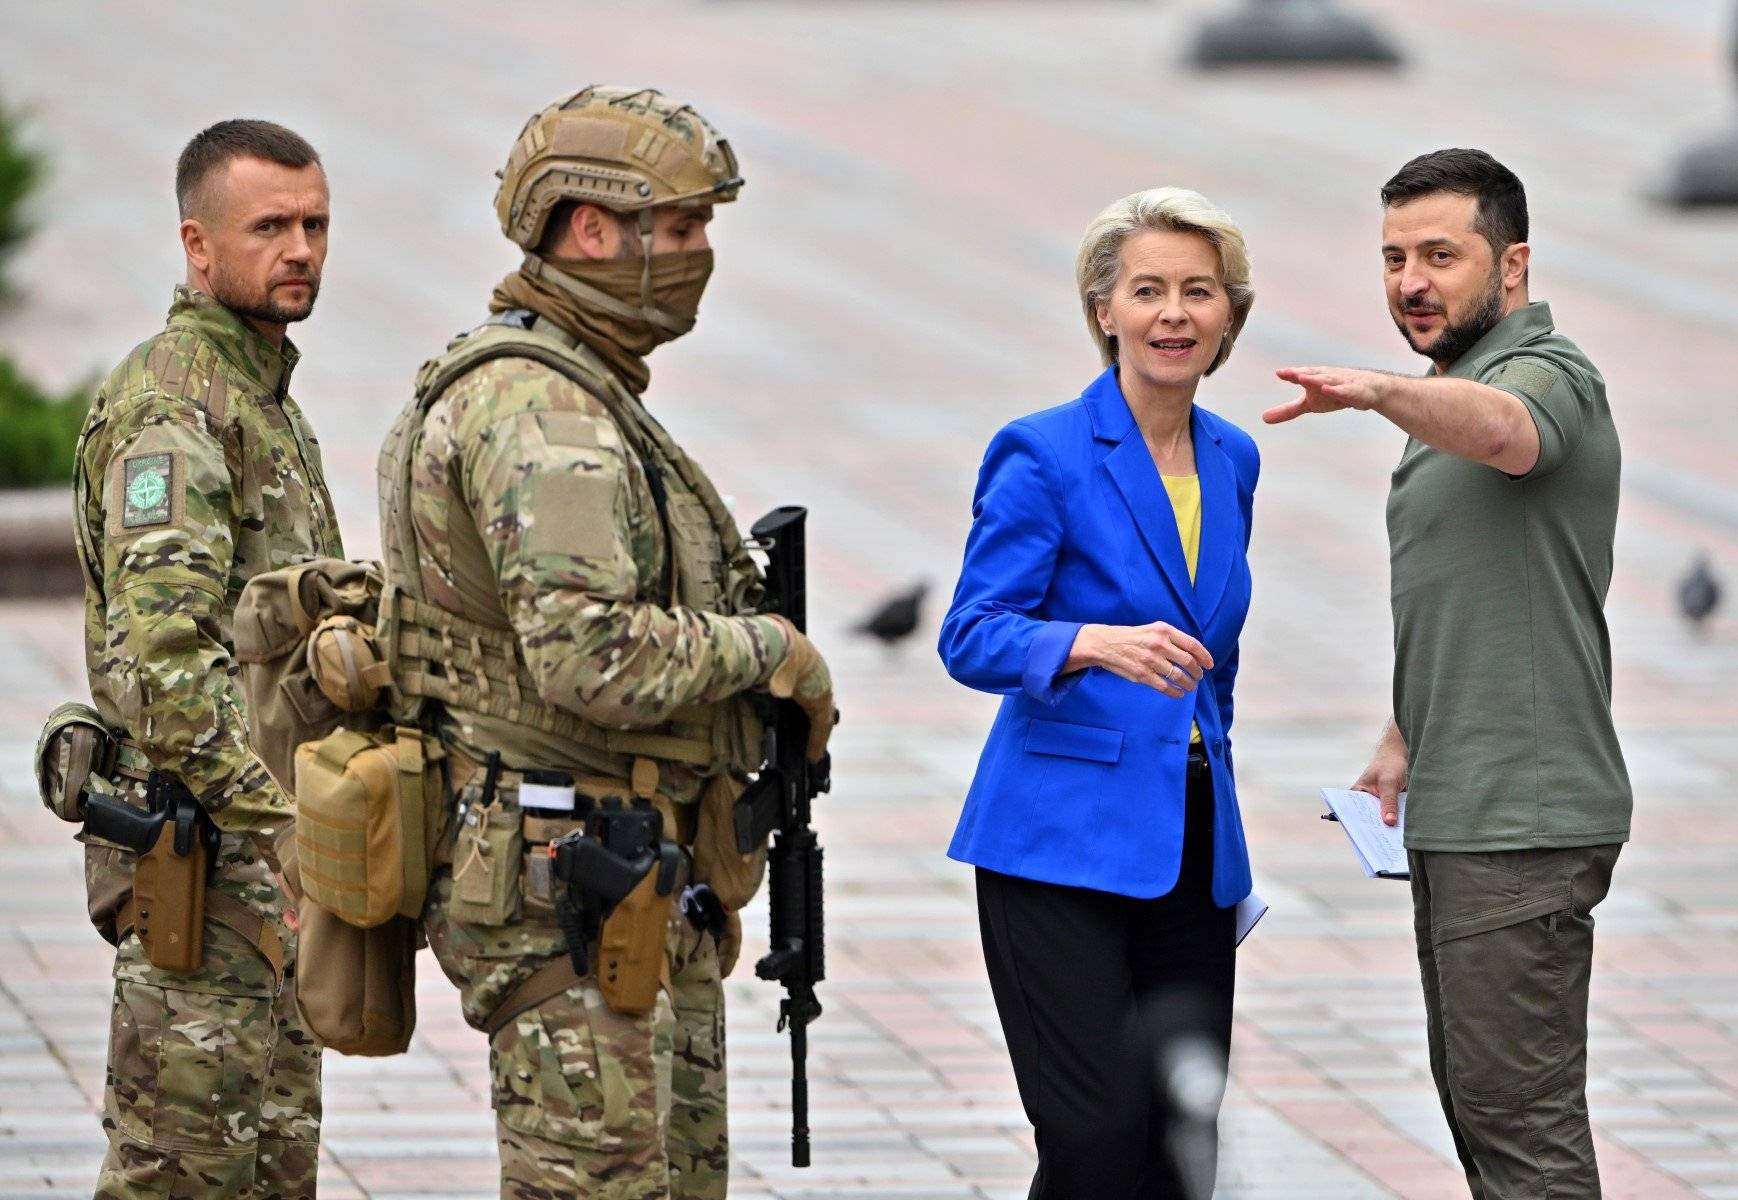 Dwaj uzbrojeni żołnierze obok przewodniczącej KE Ursuli von der Leyeen w niebieksikm żakieci i prezydenta Zełenskiego w wojskowym ubraniu